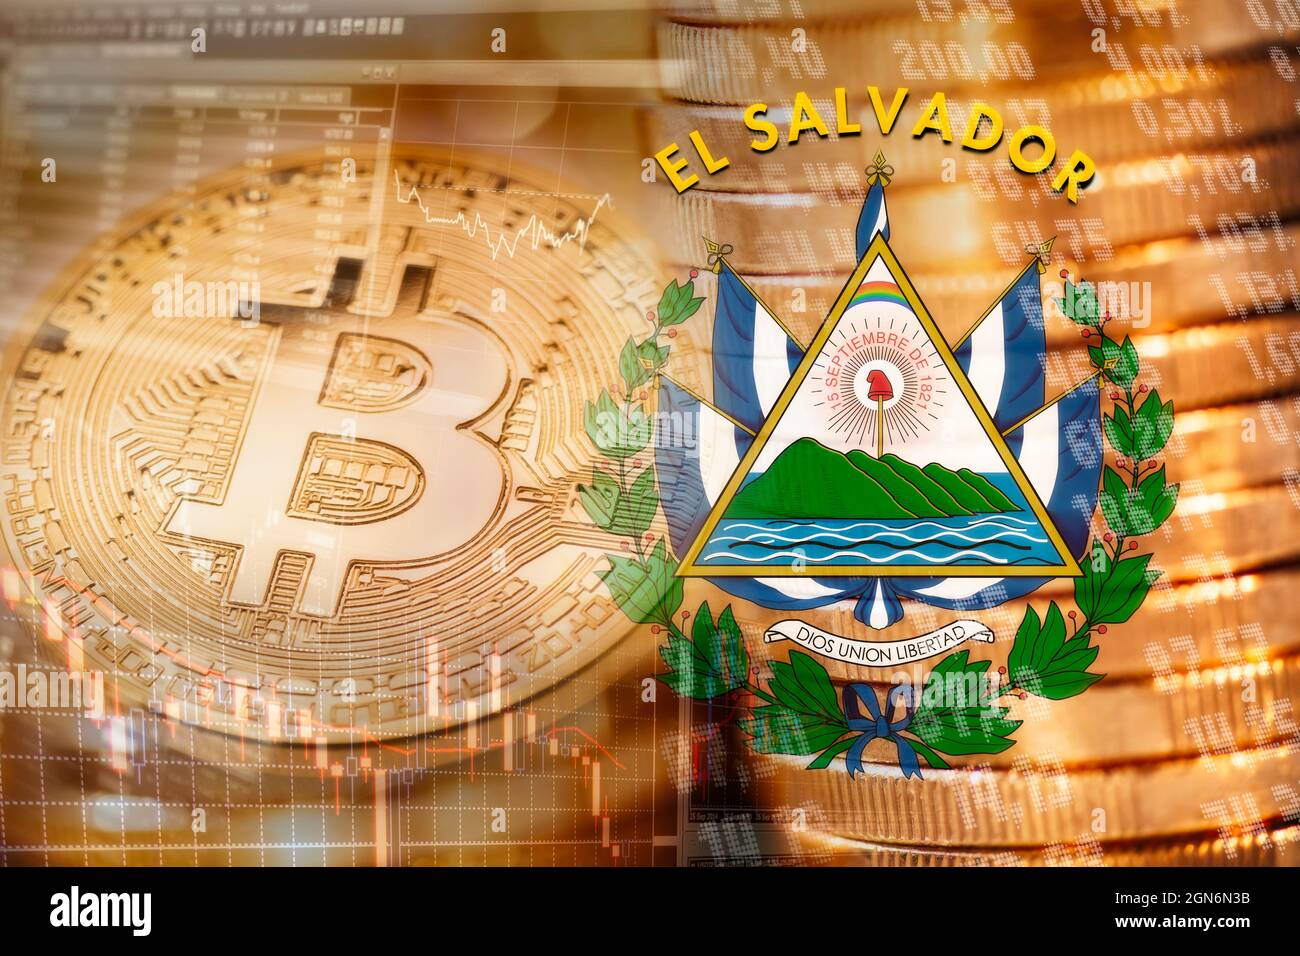 Bitcoin ist ein offizielles Zahlungsmittel in El Salvador Stockfoto